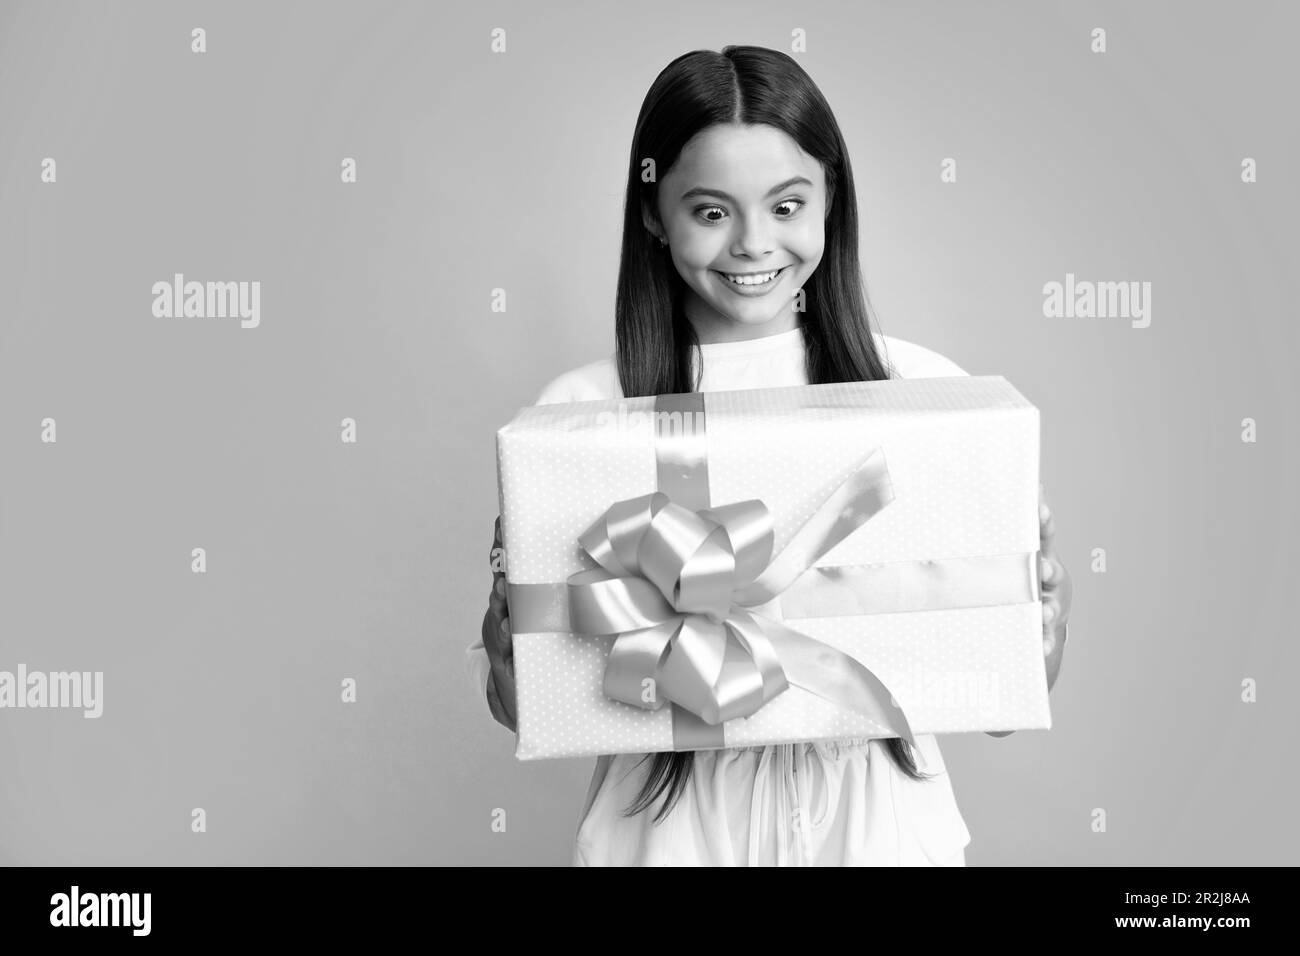 Teenager mit Geschenkbox. Ein Mädchen, das Geburtstagsgeschenk macht. Geschenk-, Begrüßungs- und Geschenkkonzept. Überraschtes Gesicht, überraschende Emotionen von Teenager gi Stockfoto